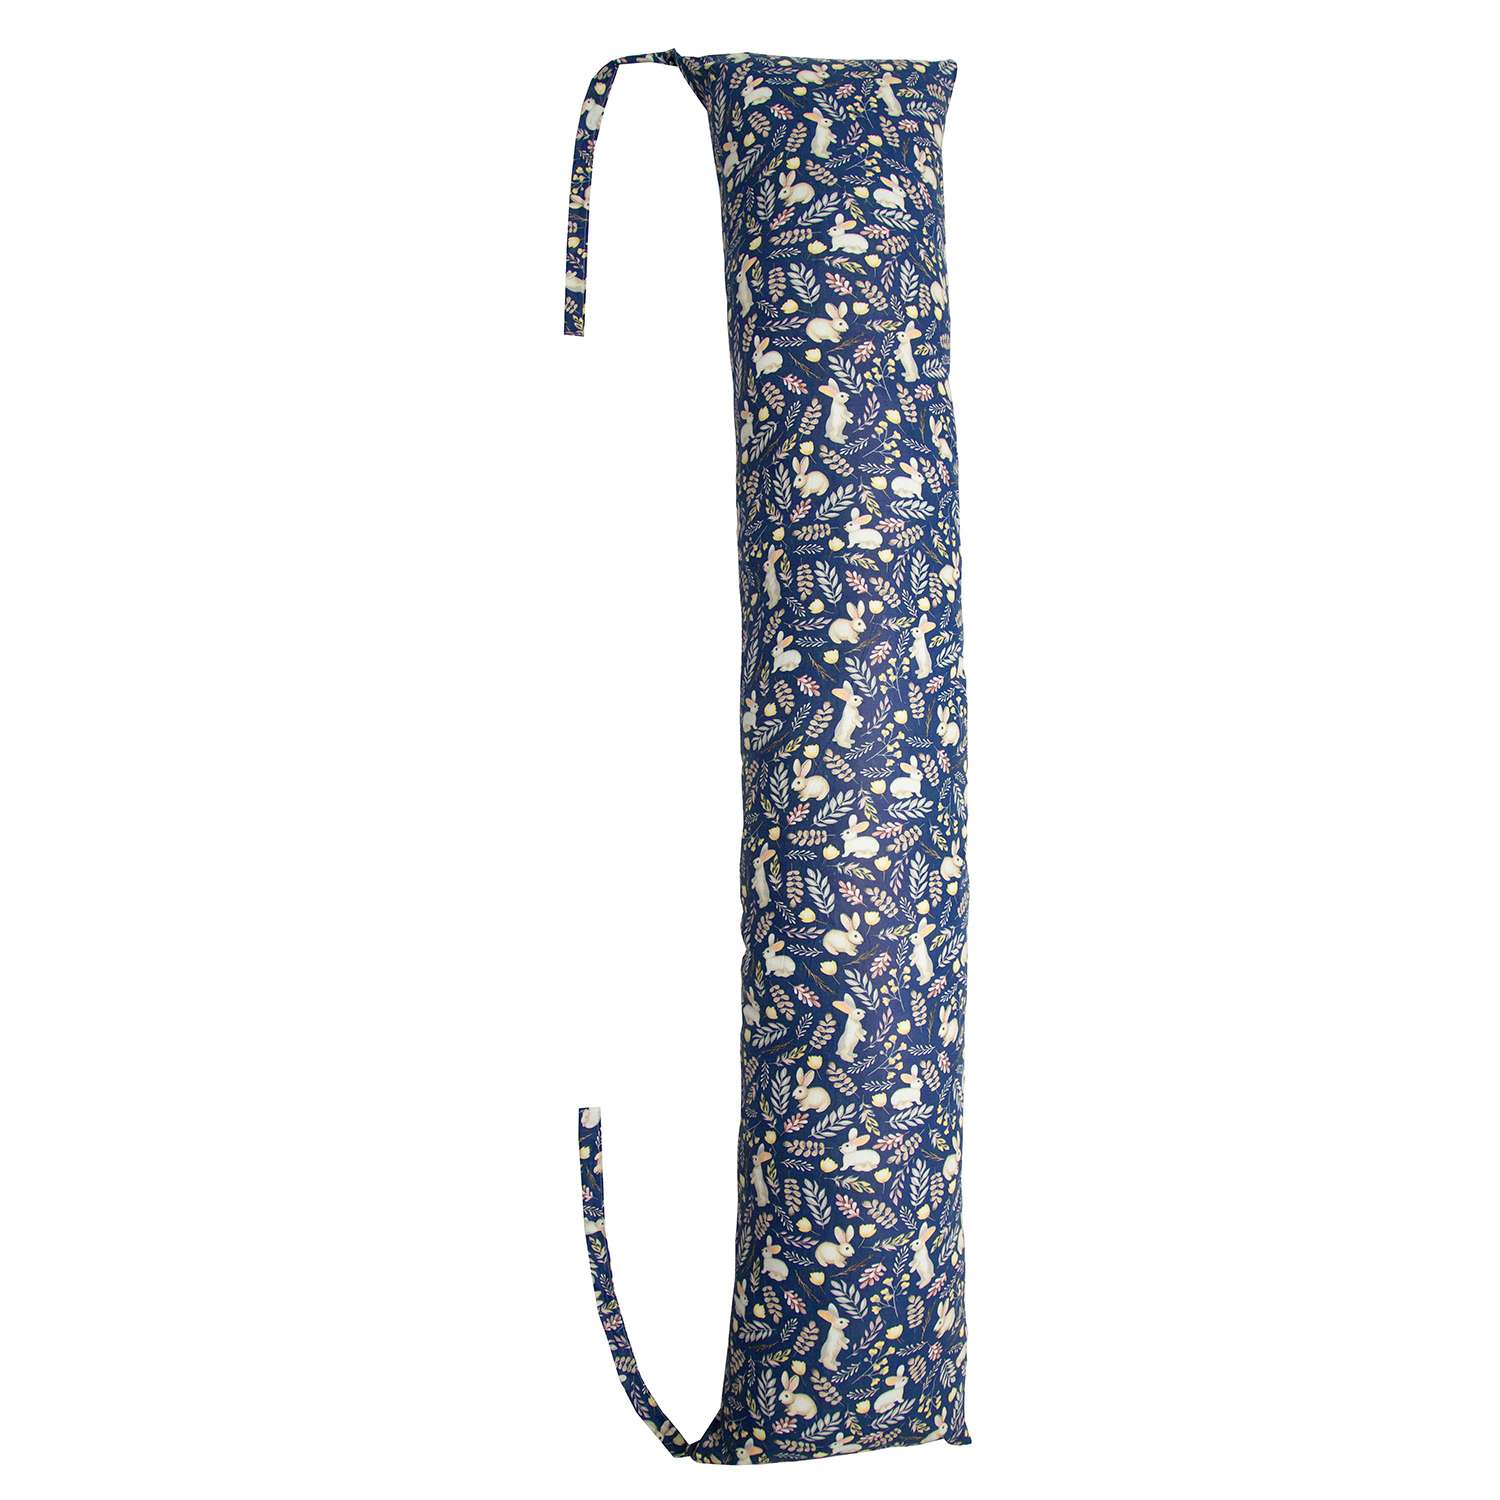 Подушка AmaroBaby для беременных валик 170х35 см Зайчата синий - фото 1